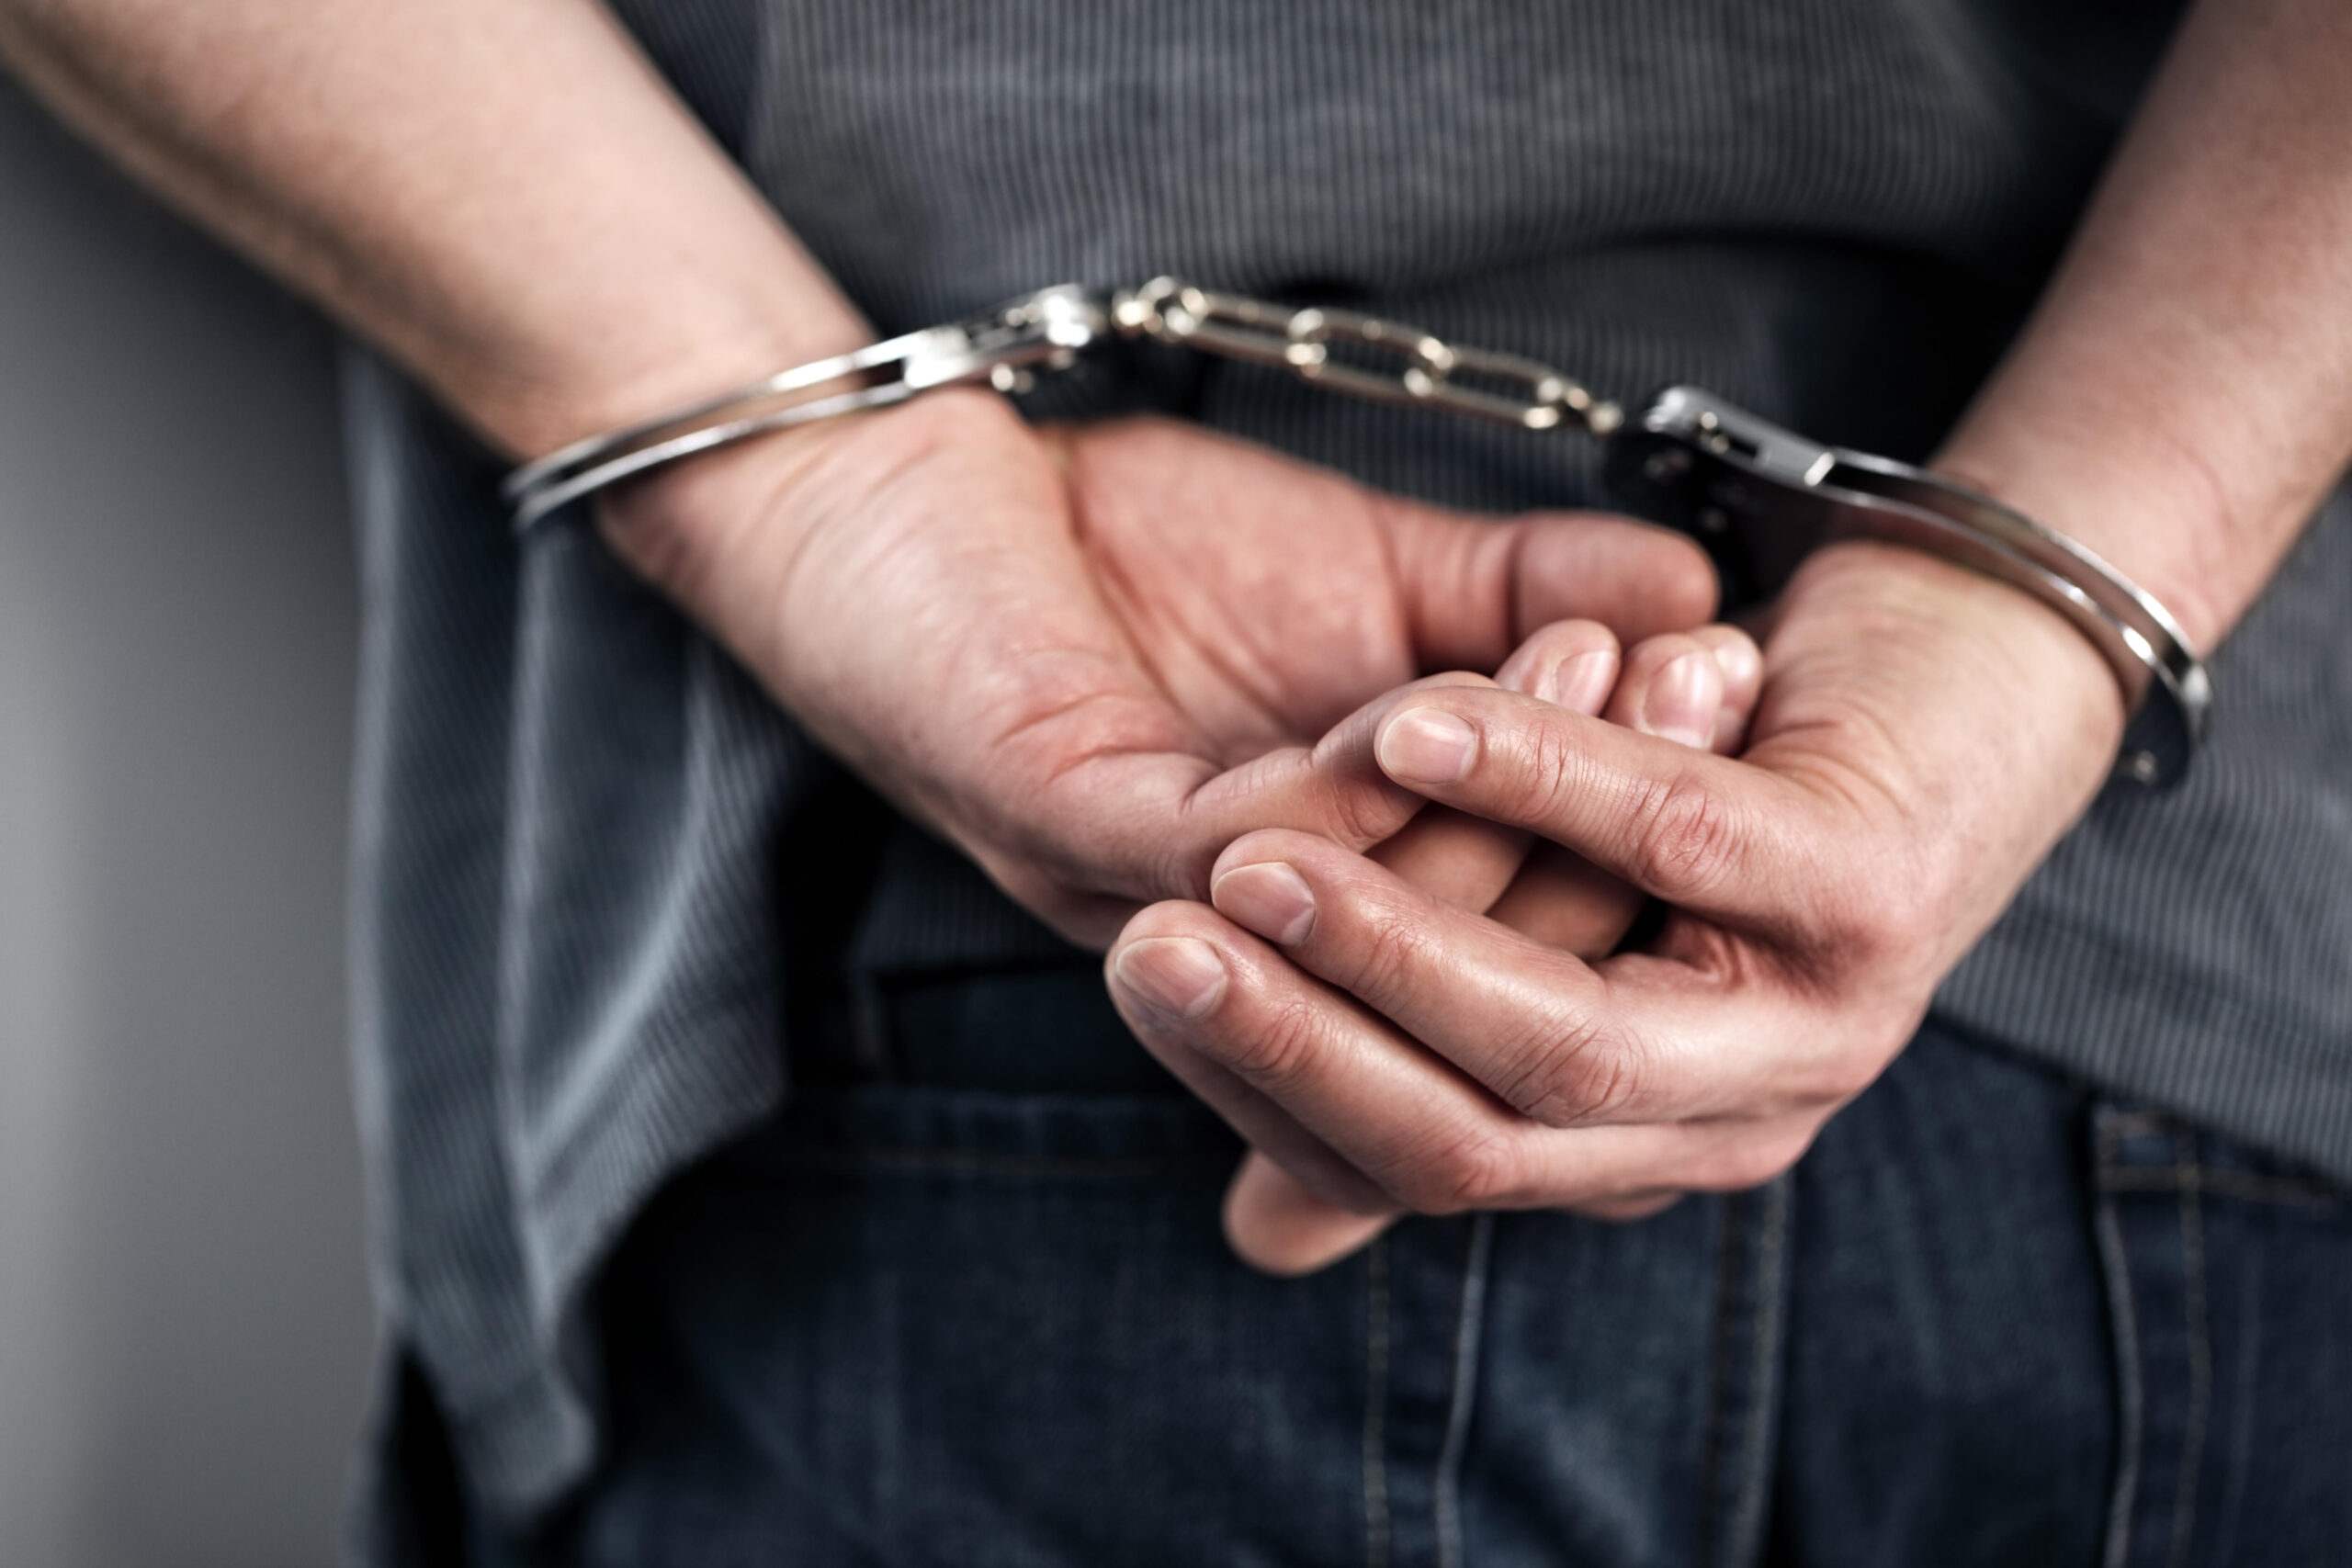 Capturado ‘cripto estafador’ que engañó a más de 10 víctimas en Chacao